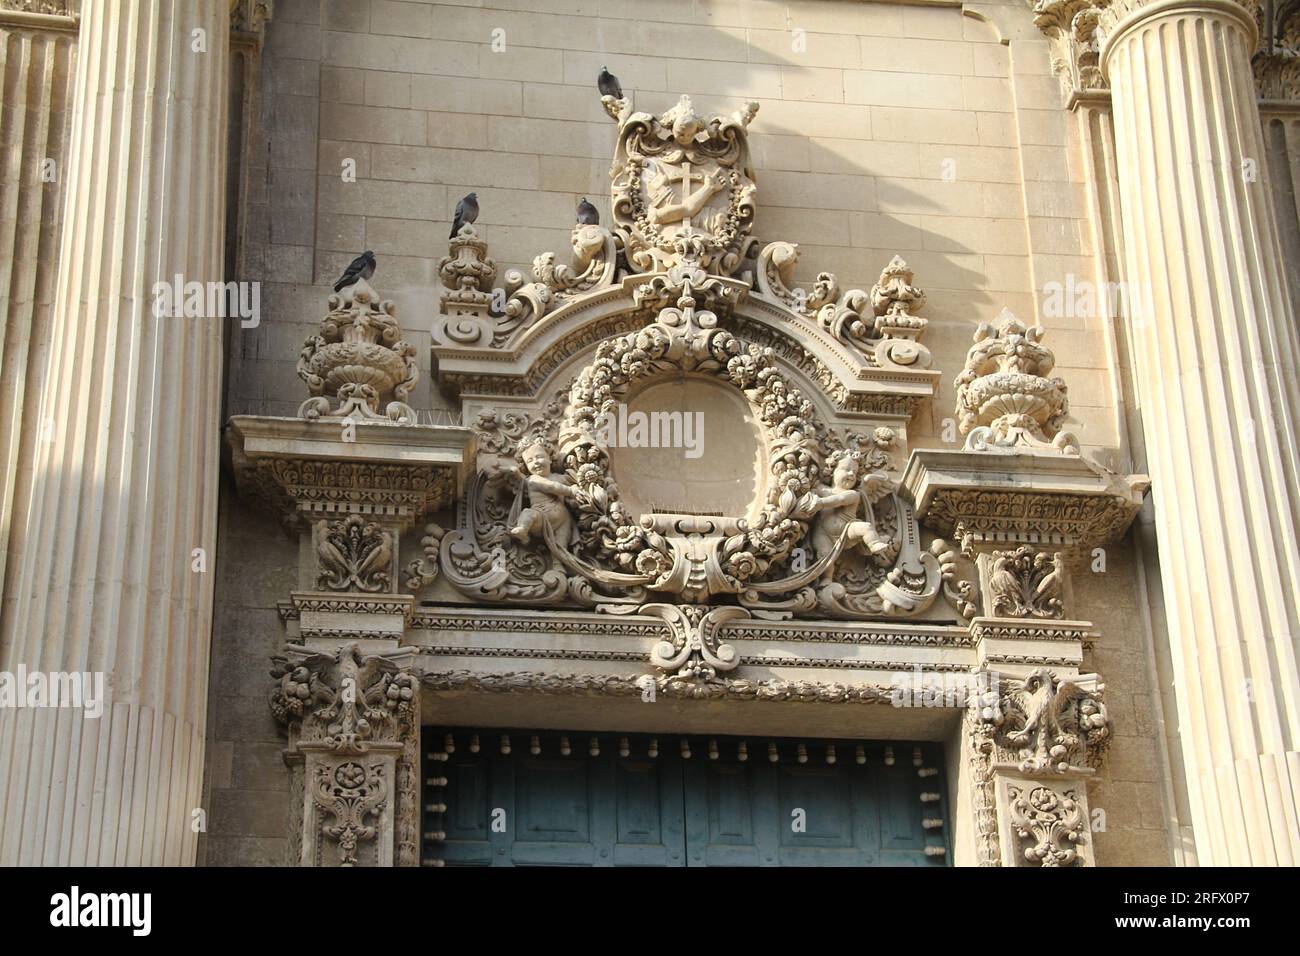 Lecce, Italie. Extérieur de l'église Sainte-Claire de l'époque médiévale. Vue des beaux ornements architecturaux au-dessus du portail. Banque D'Images